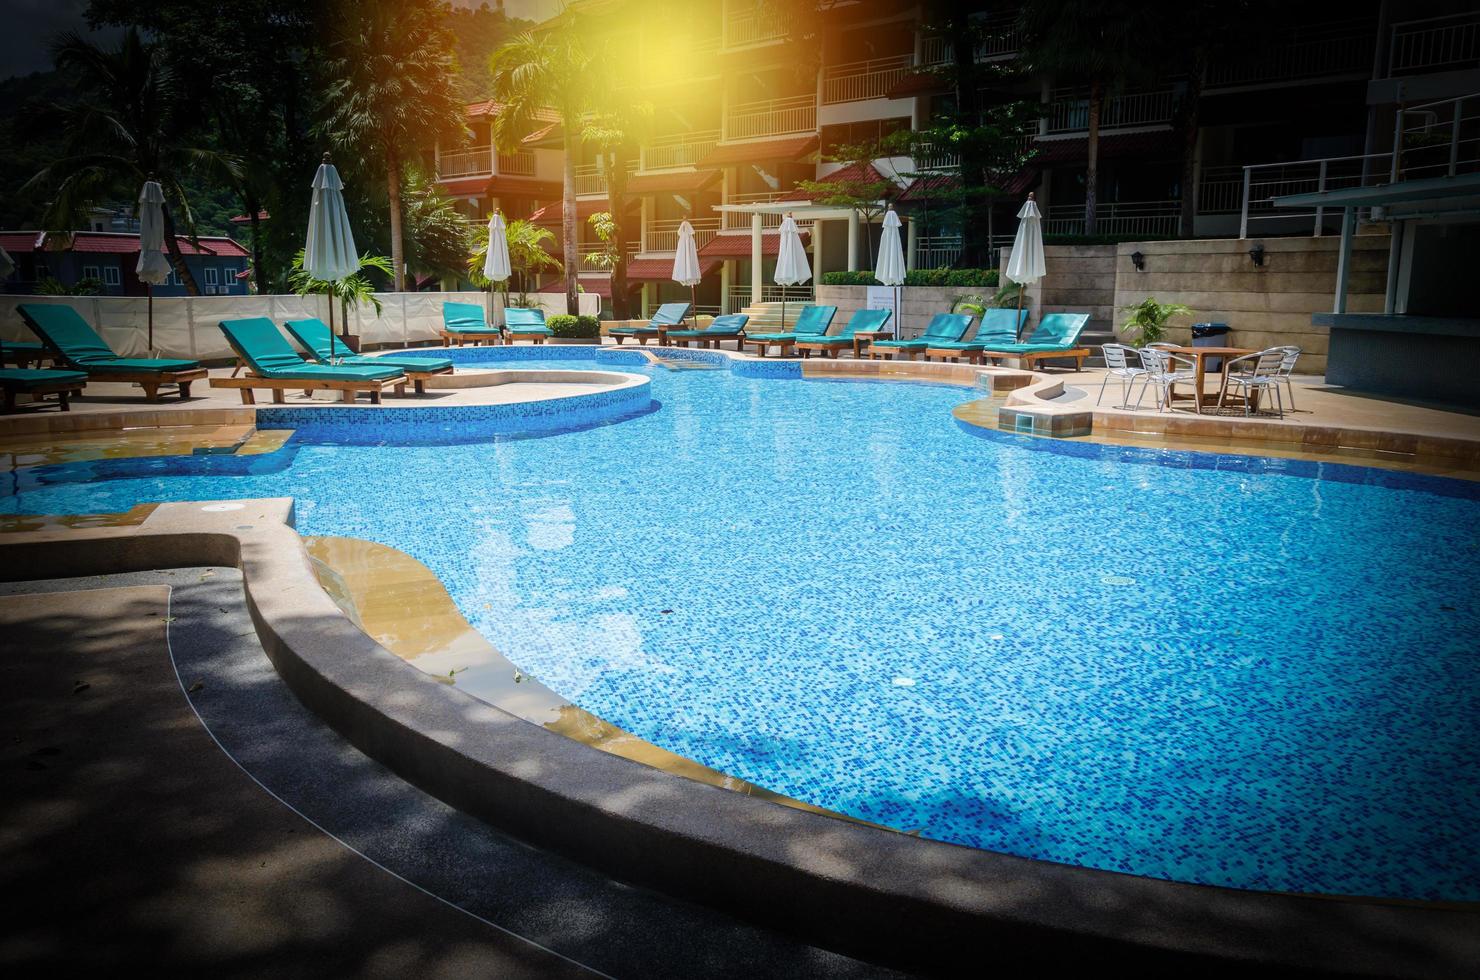 piscina do hotel com vinheta foto